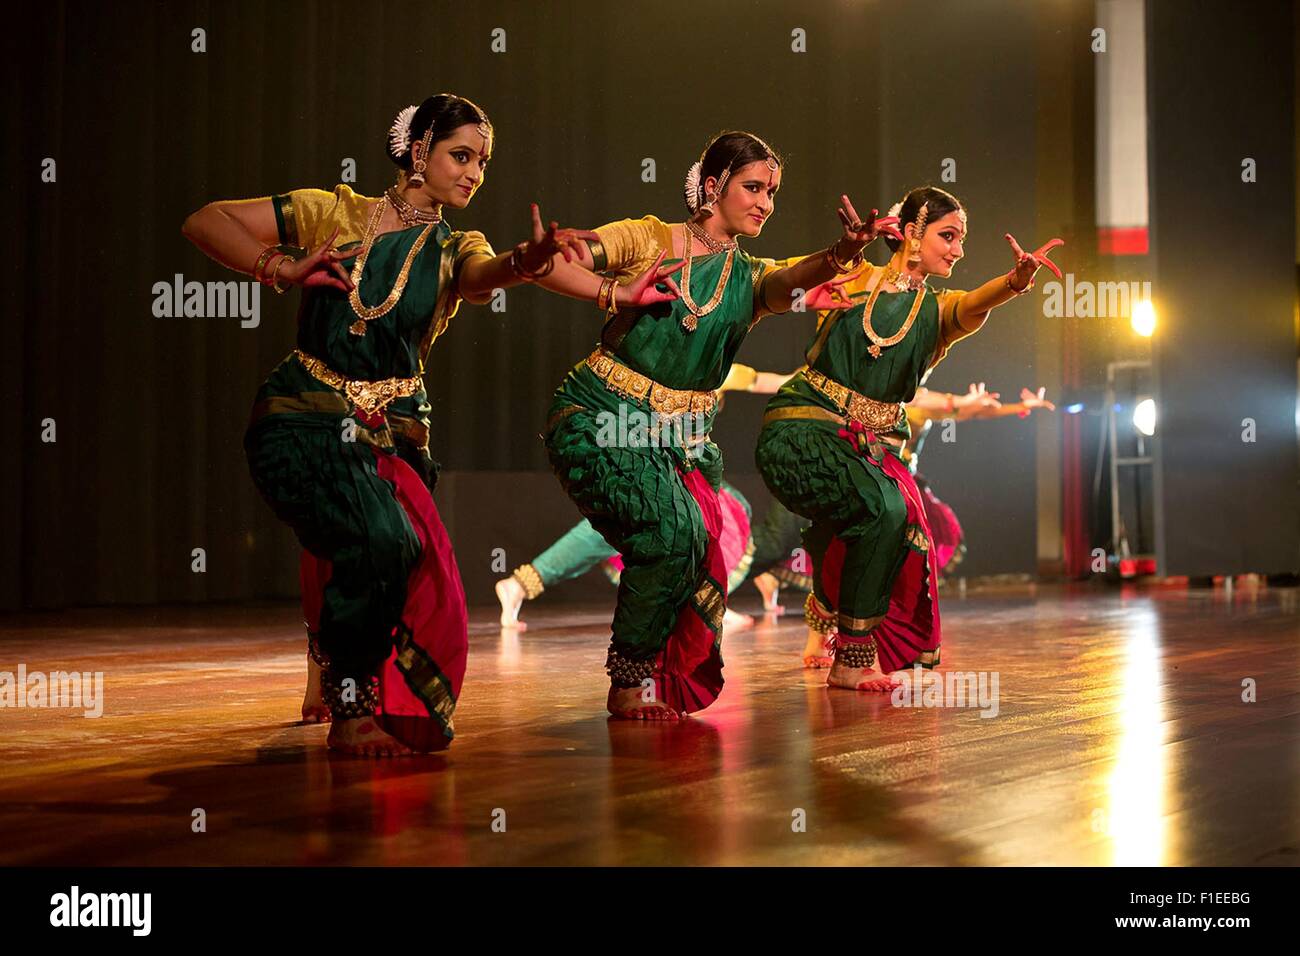 La tradizione indiana ballerini eseguono durante una manifestazione culturale prima di Stato la cena in onore di U.S. Il presidente Barack Obama e la First Lady Michelle Obama a Rashtrapati Bhawan Gennaio 25, 2015 a New Delhi, India. Foto Stock